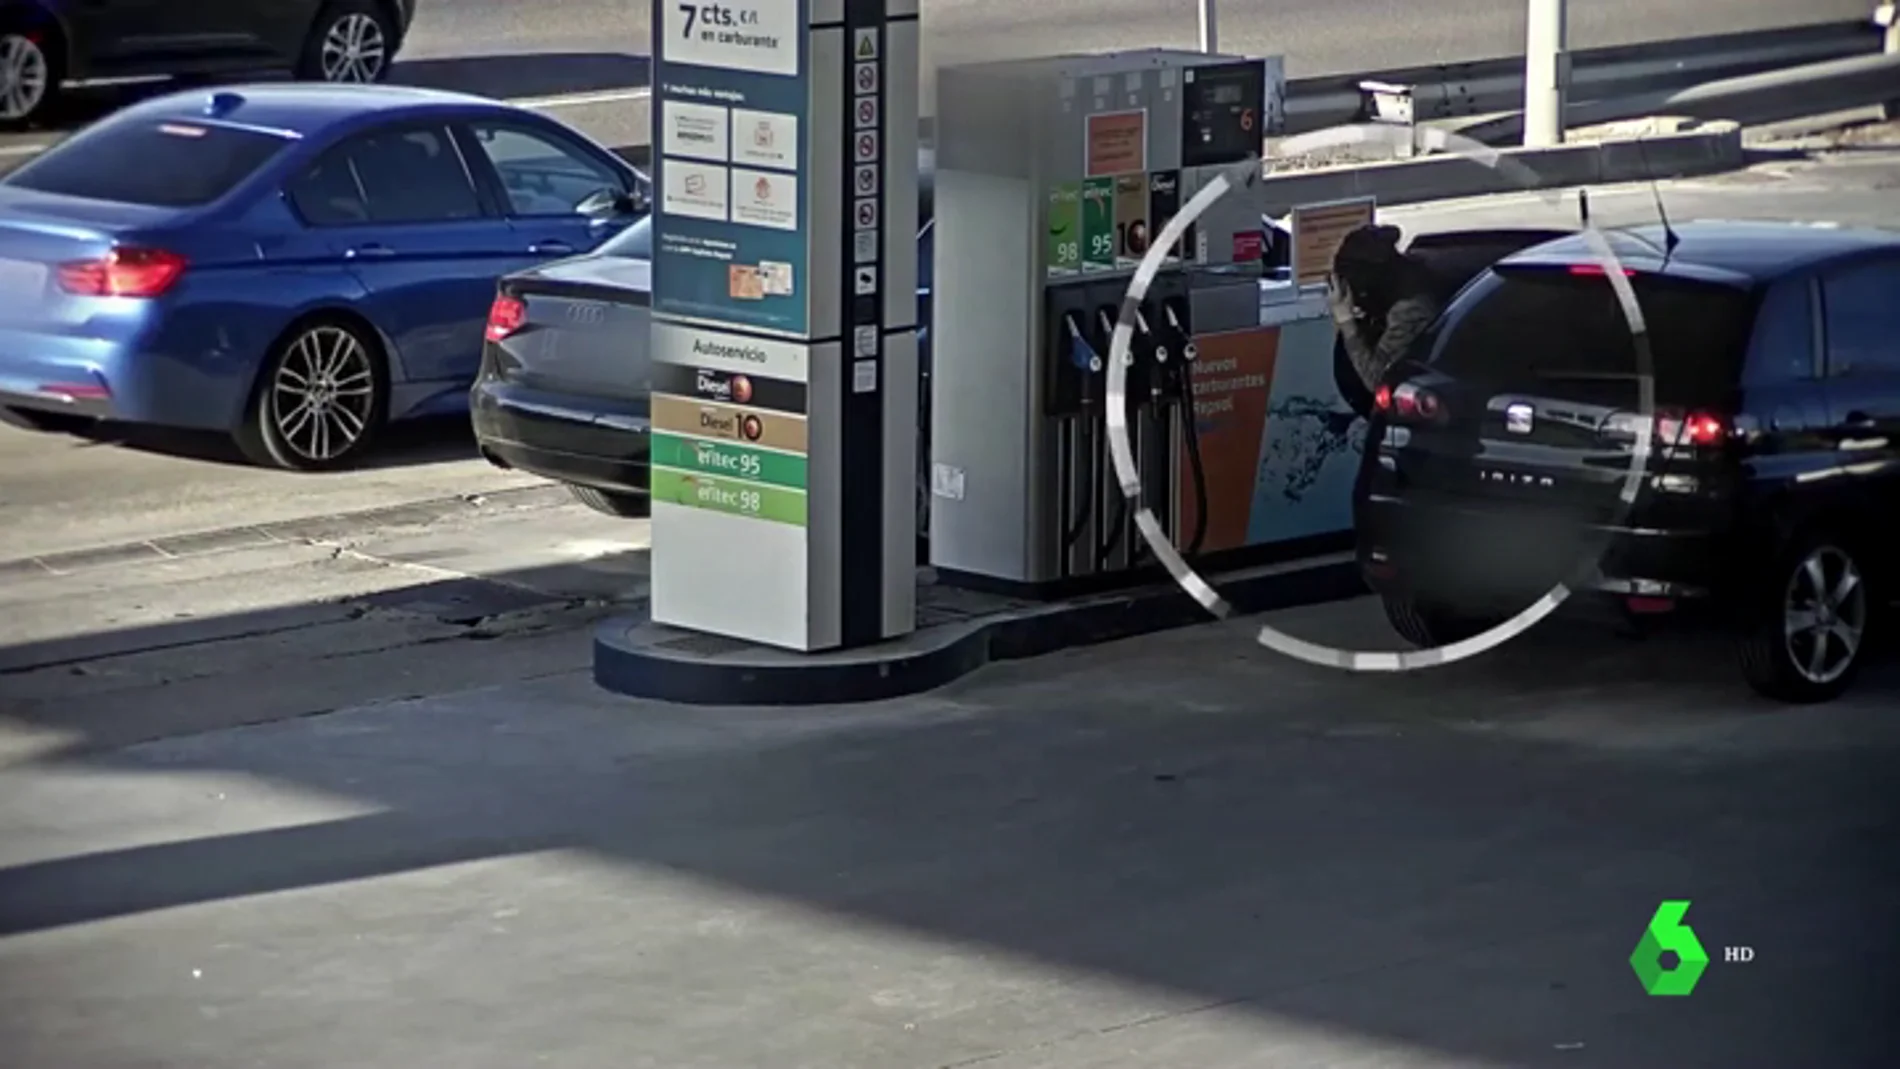 Dos agentes fuera de servicio pillan in fraganti a un ladrón que intentaba robar un bolso en una gasolinera